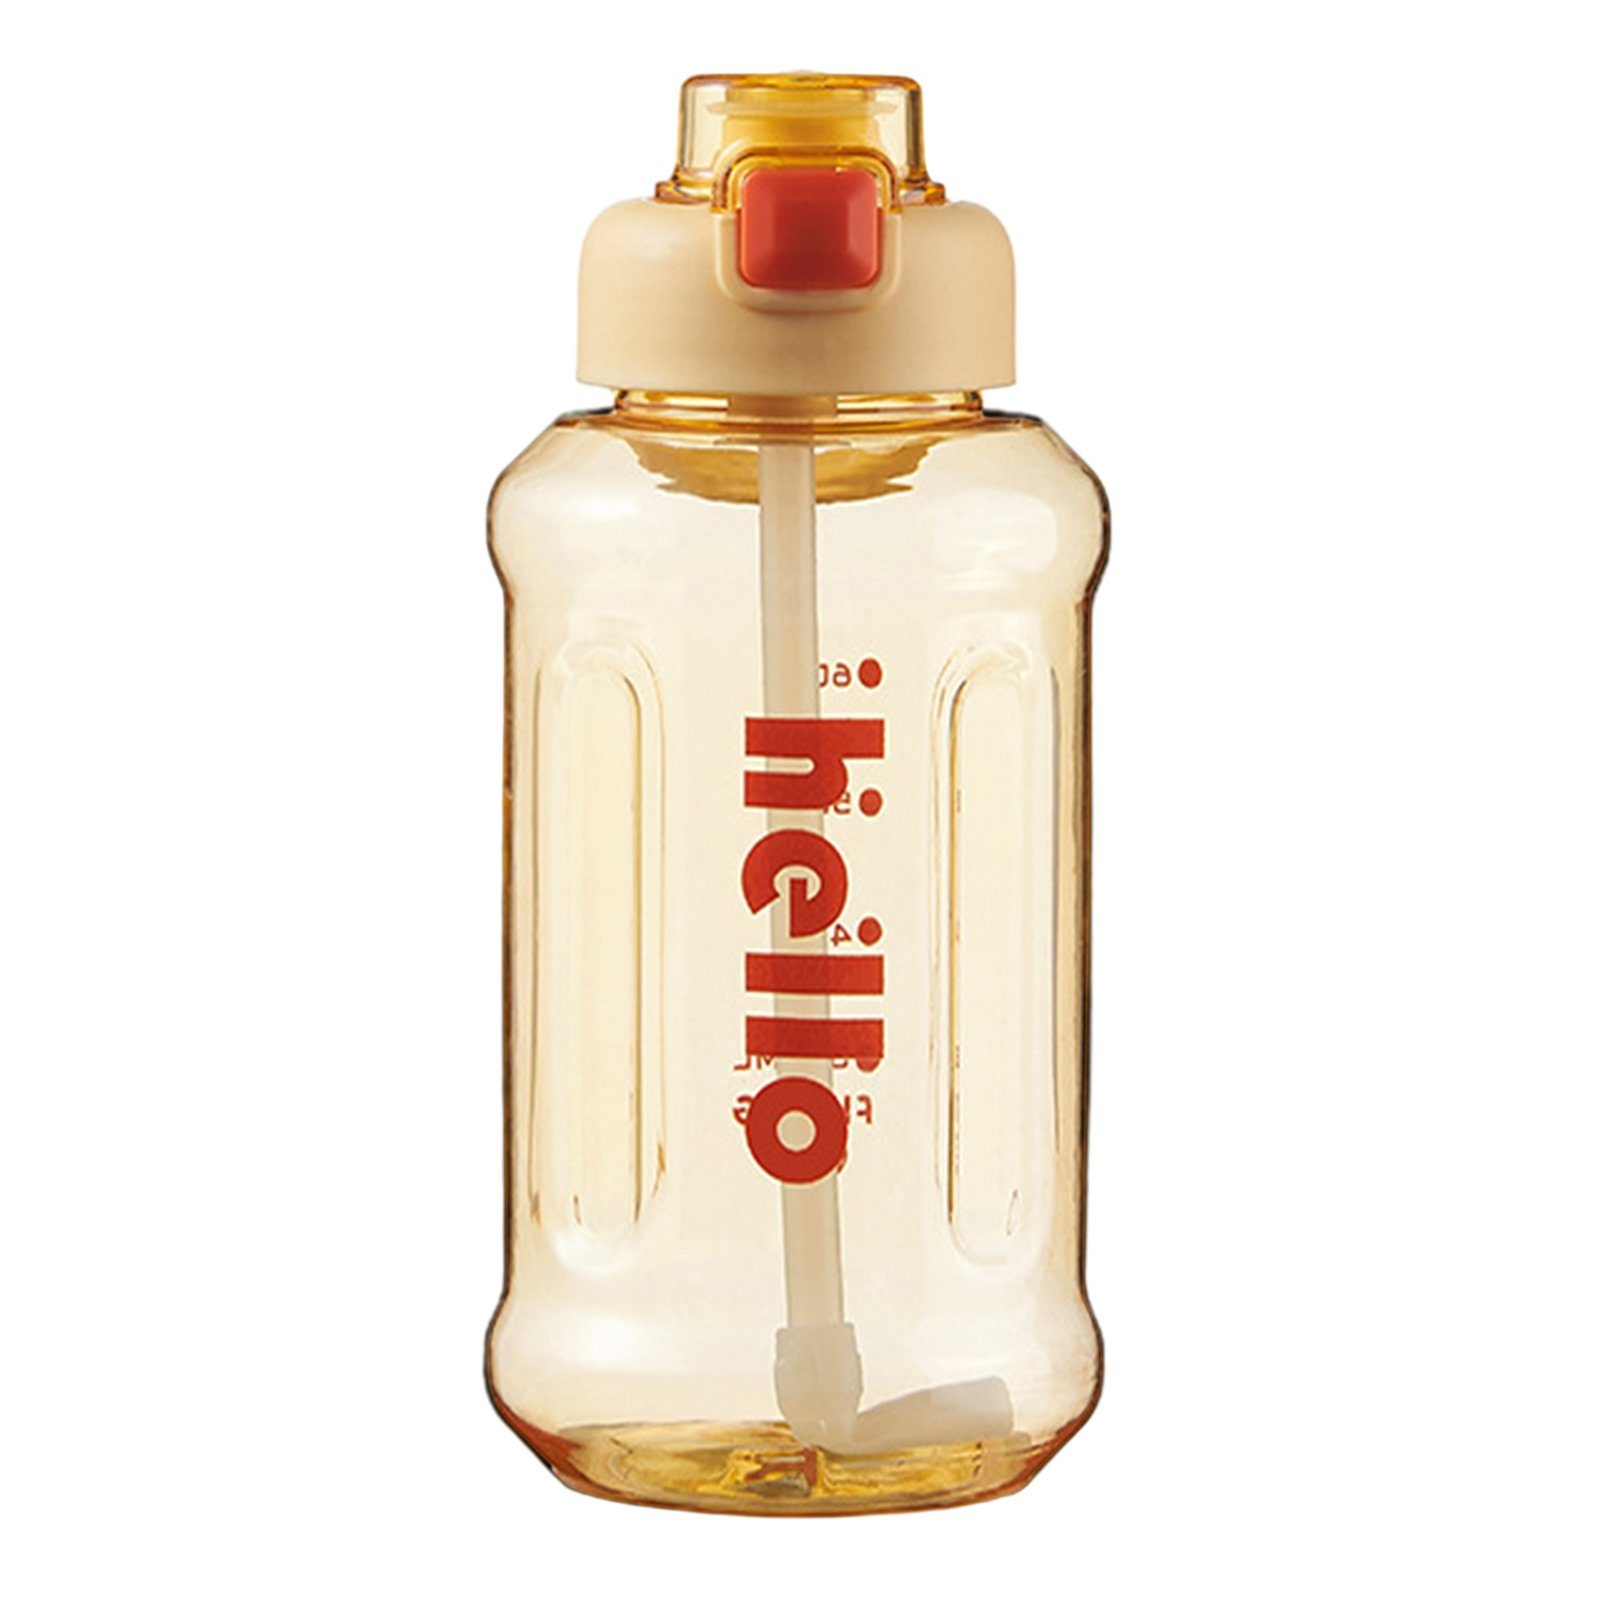 Blusmart Trinkflasche Tragbarer Stroh-Wasserbecher Mit Griff, Hoher Kapazität, Versiegelter, Trinkflasche yellow 1000ml